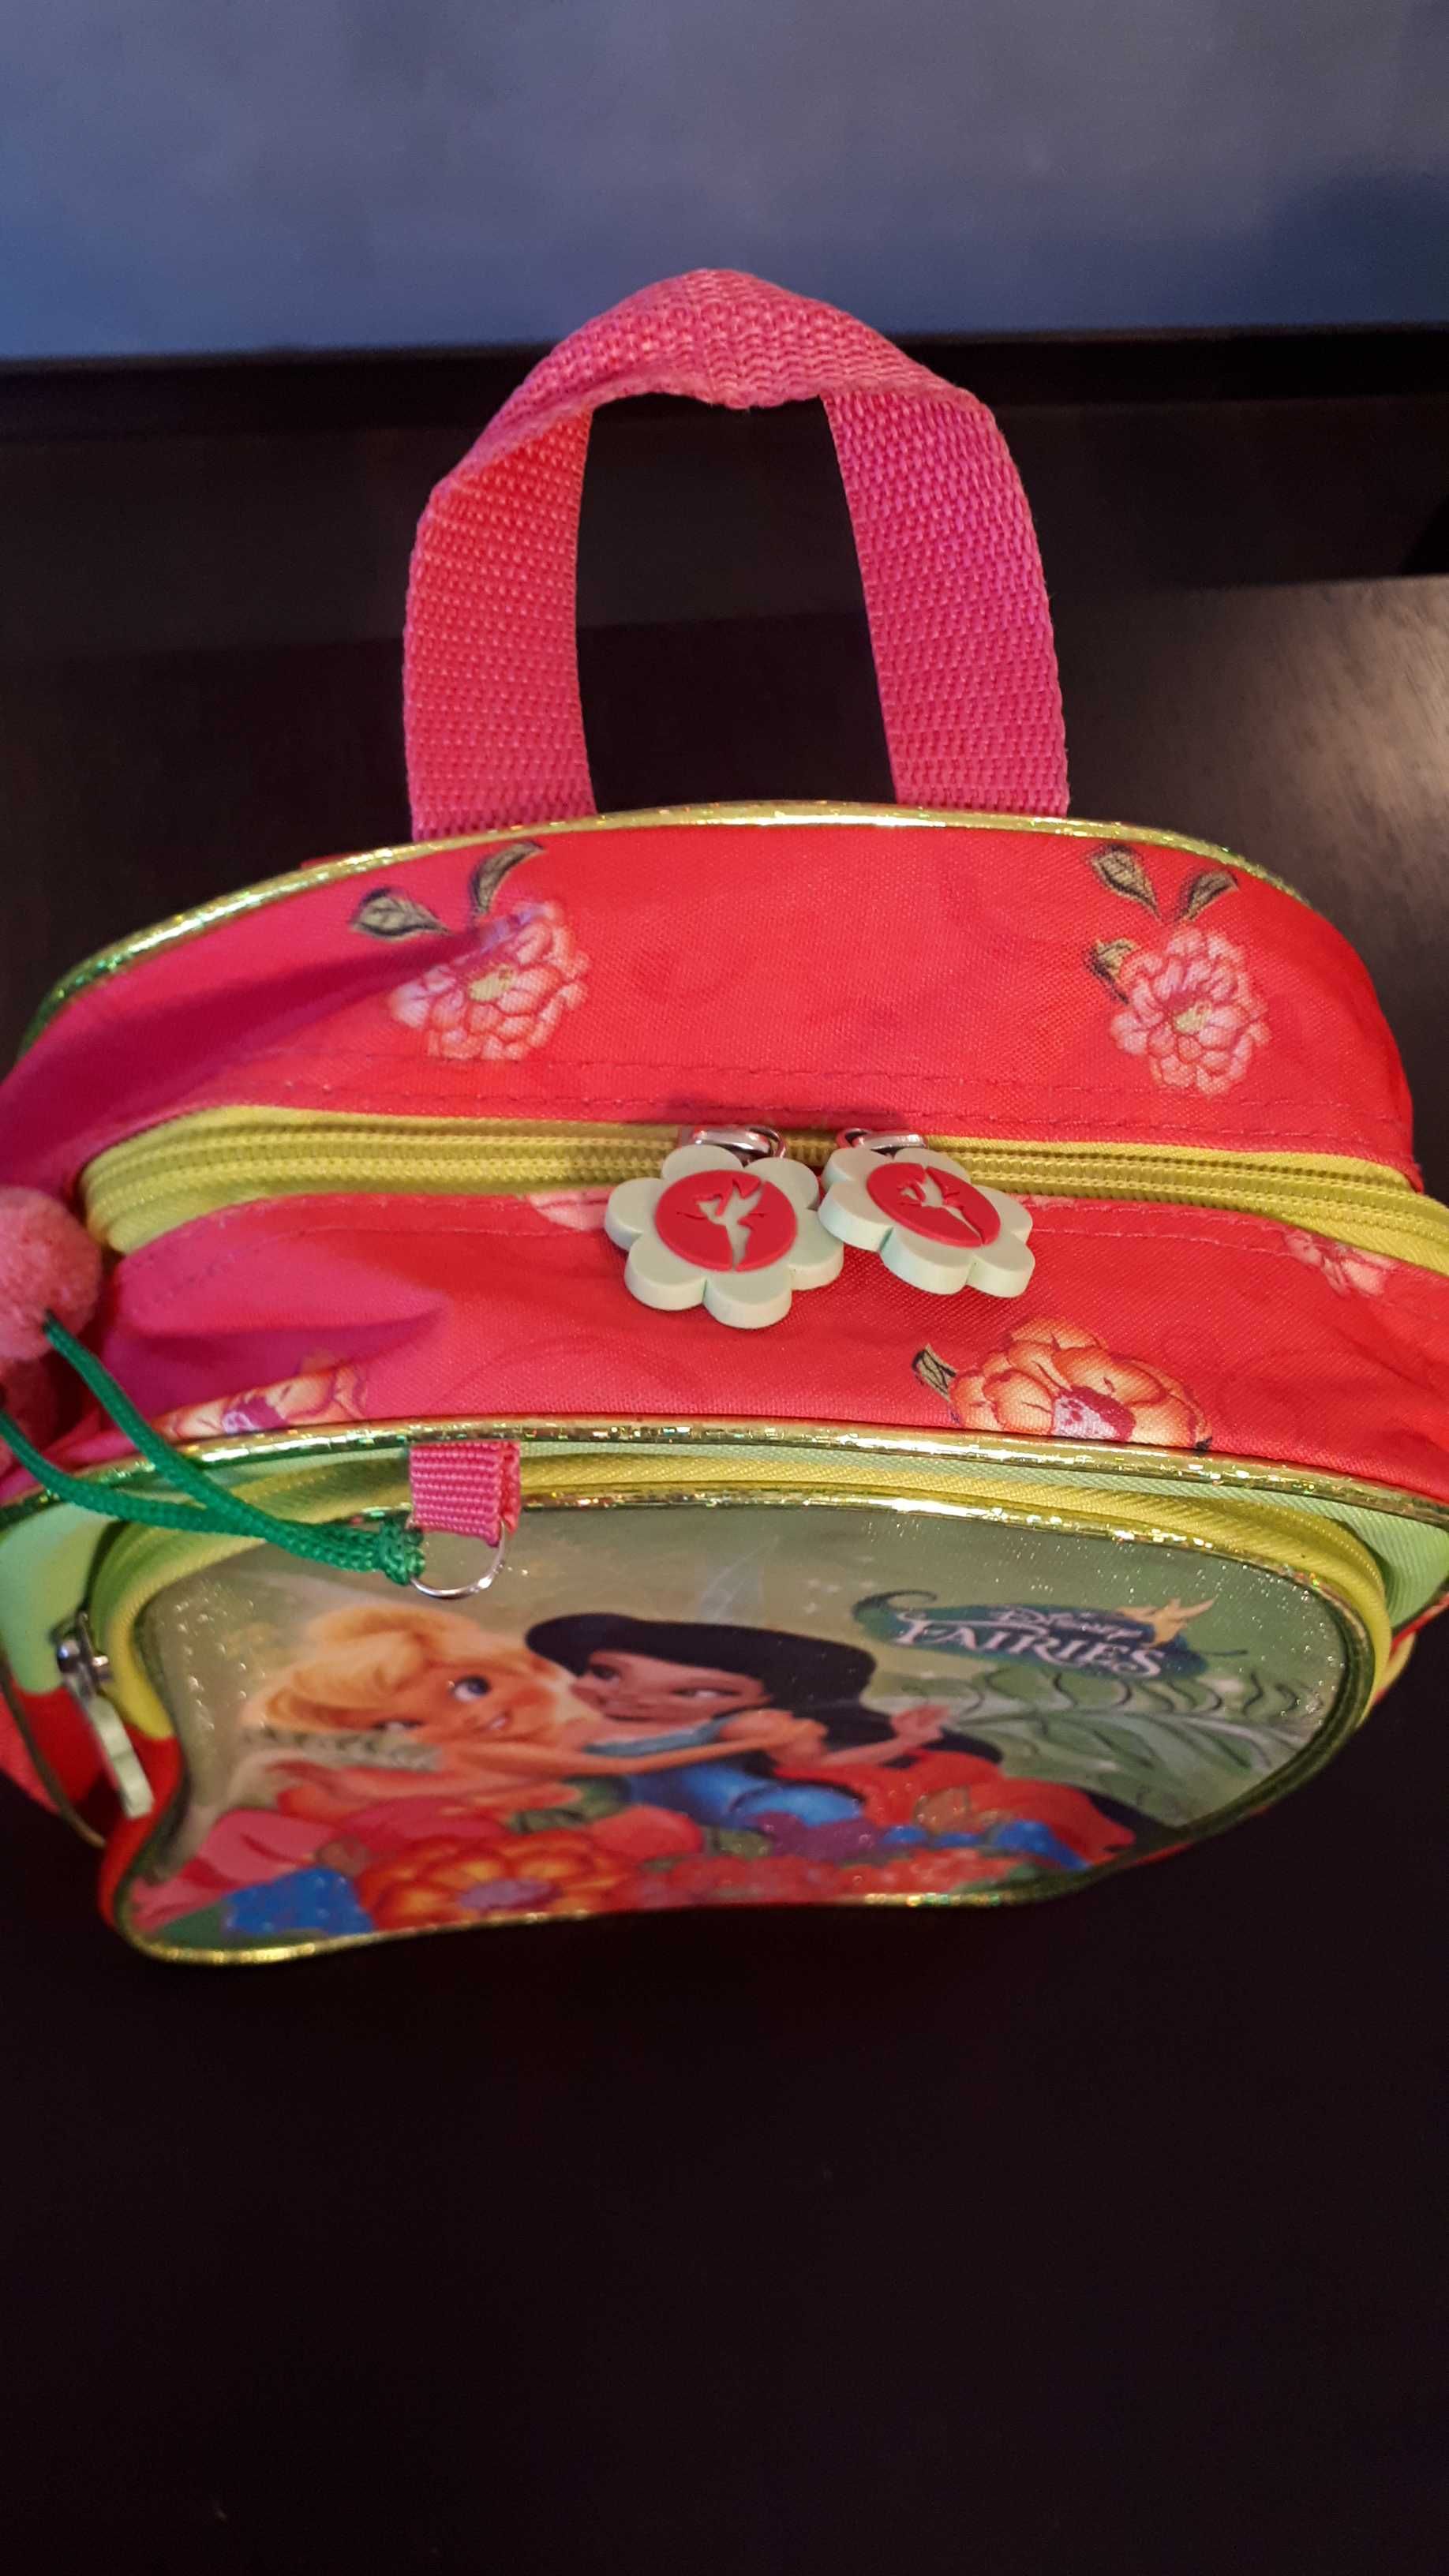 Plecak/plecaczek do przedszkola St.Majewski Disney Fairies